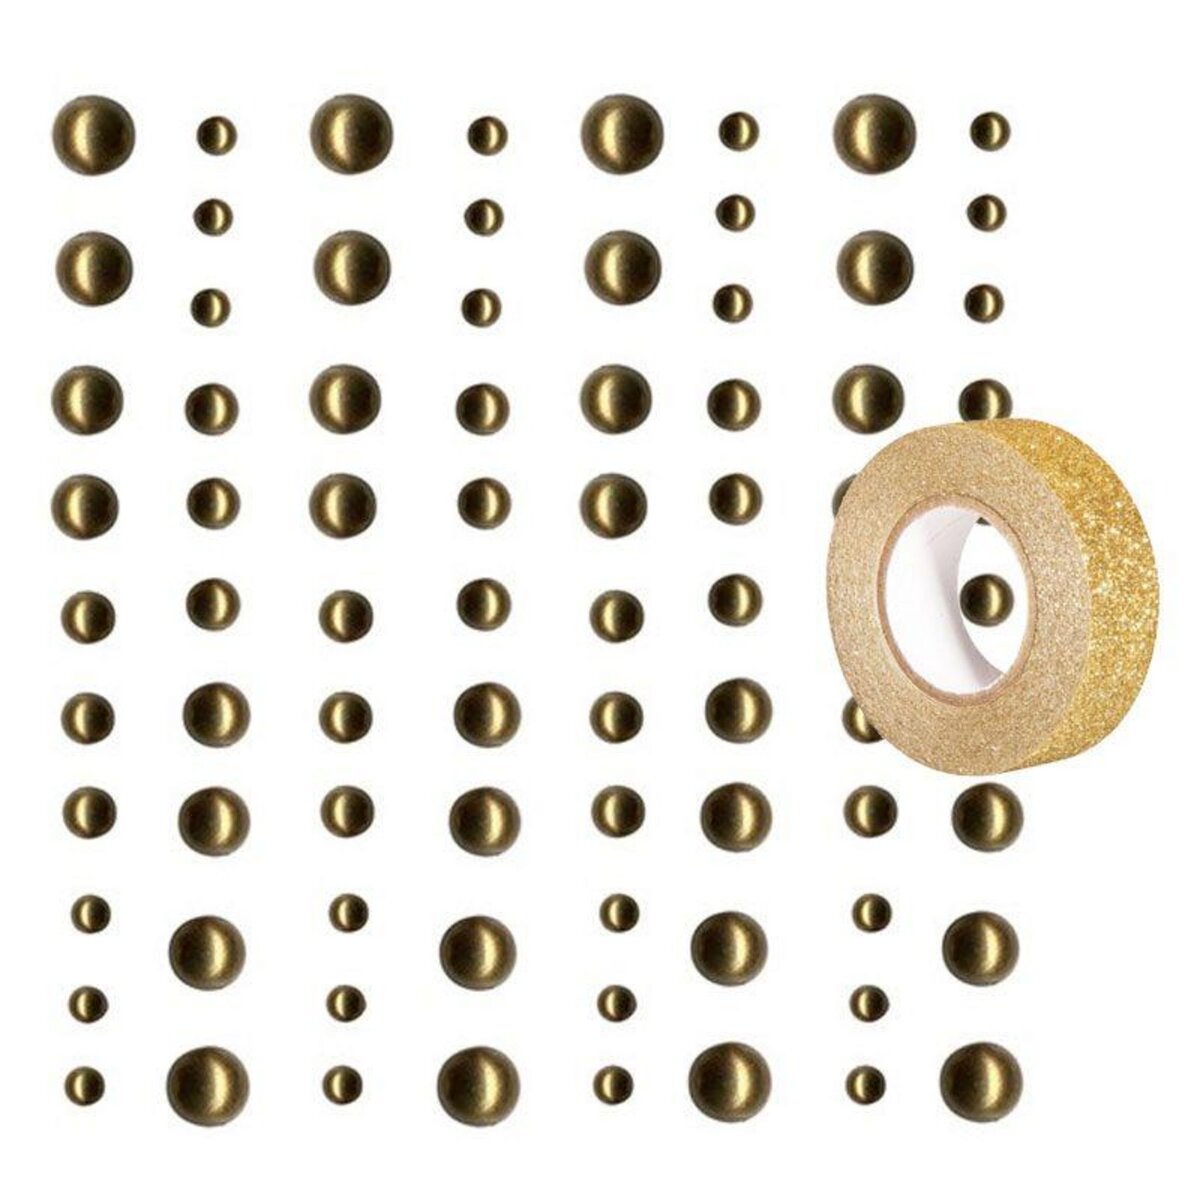 Youdoit 80 perles adhésives doré clair + masking tape doré à paillettes 5 m